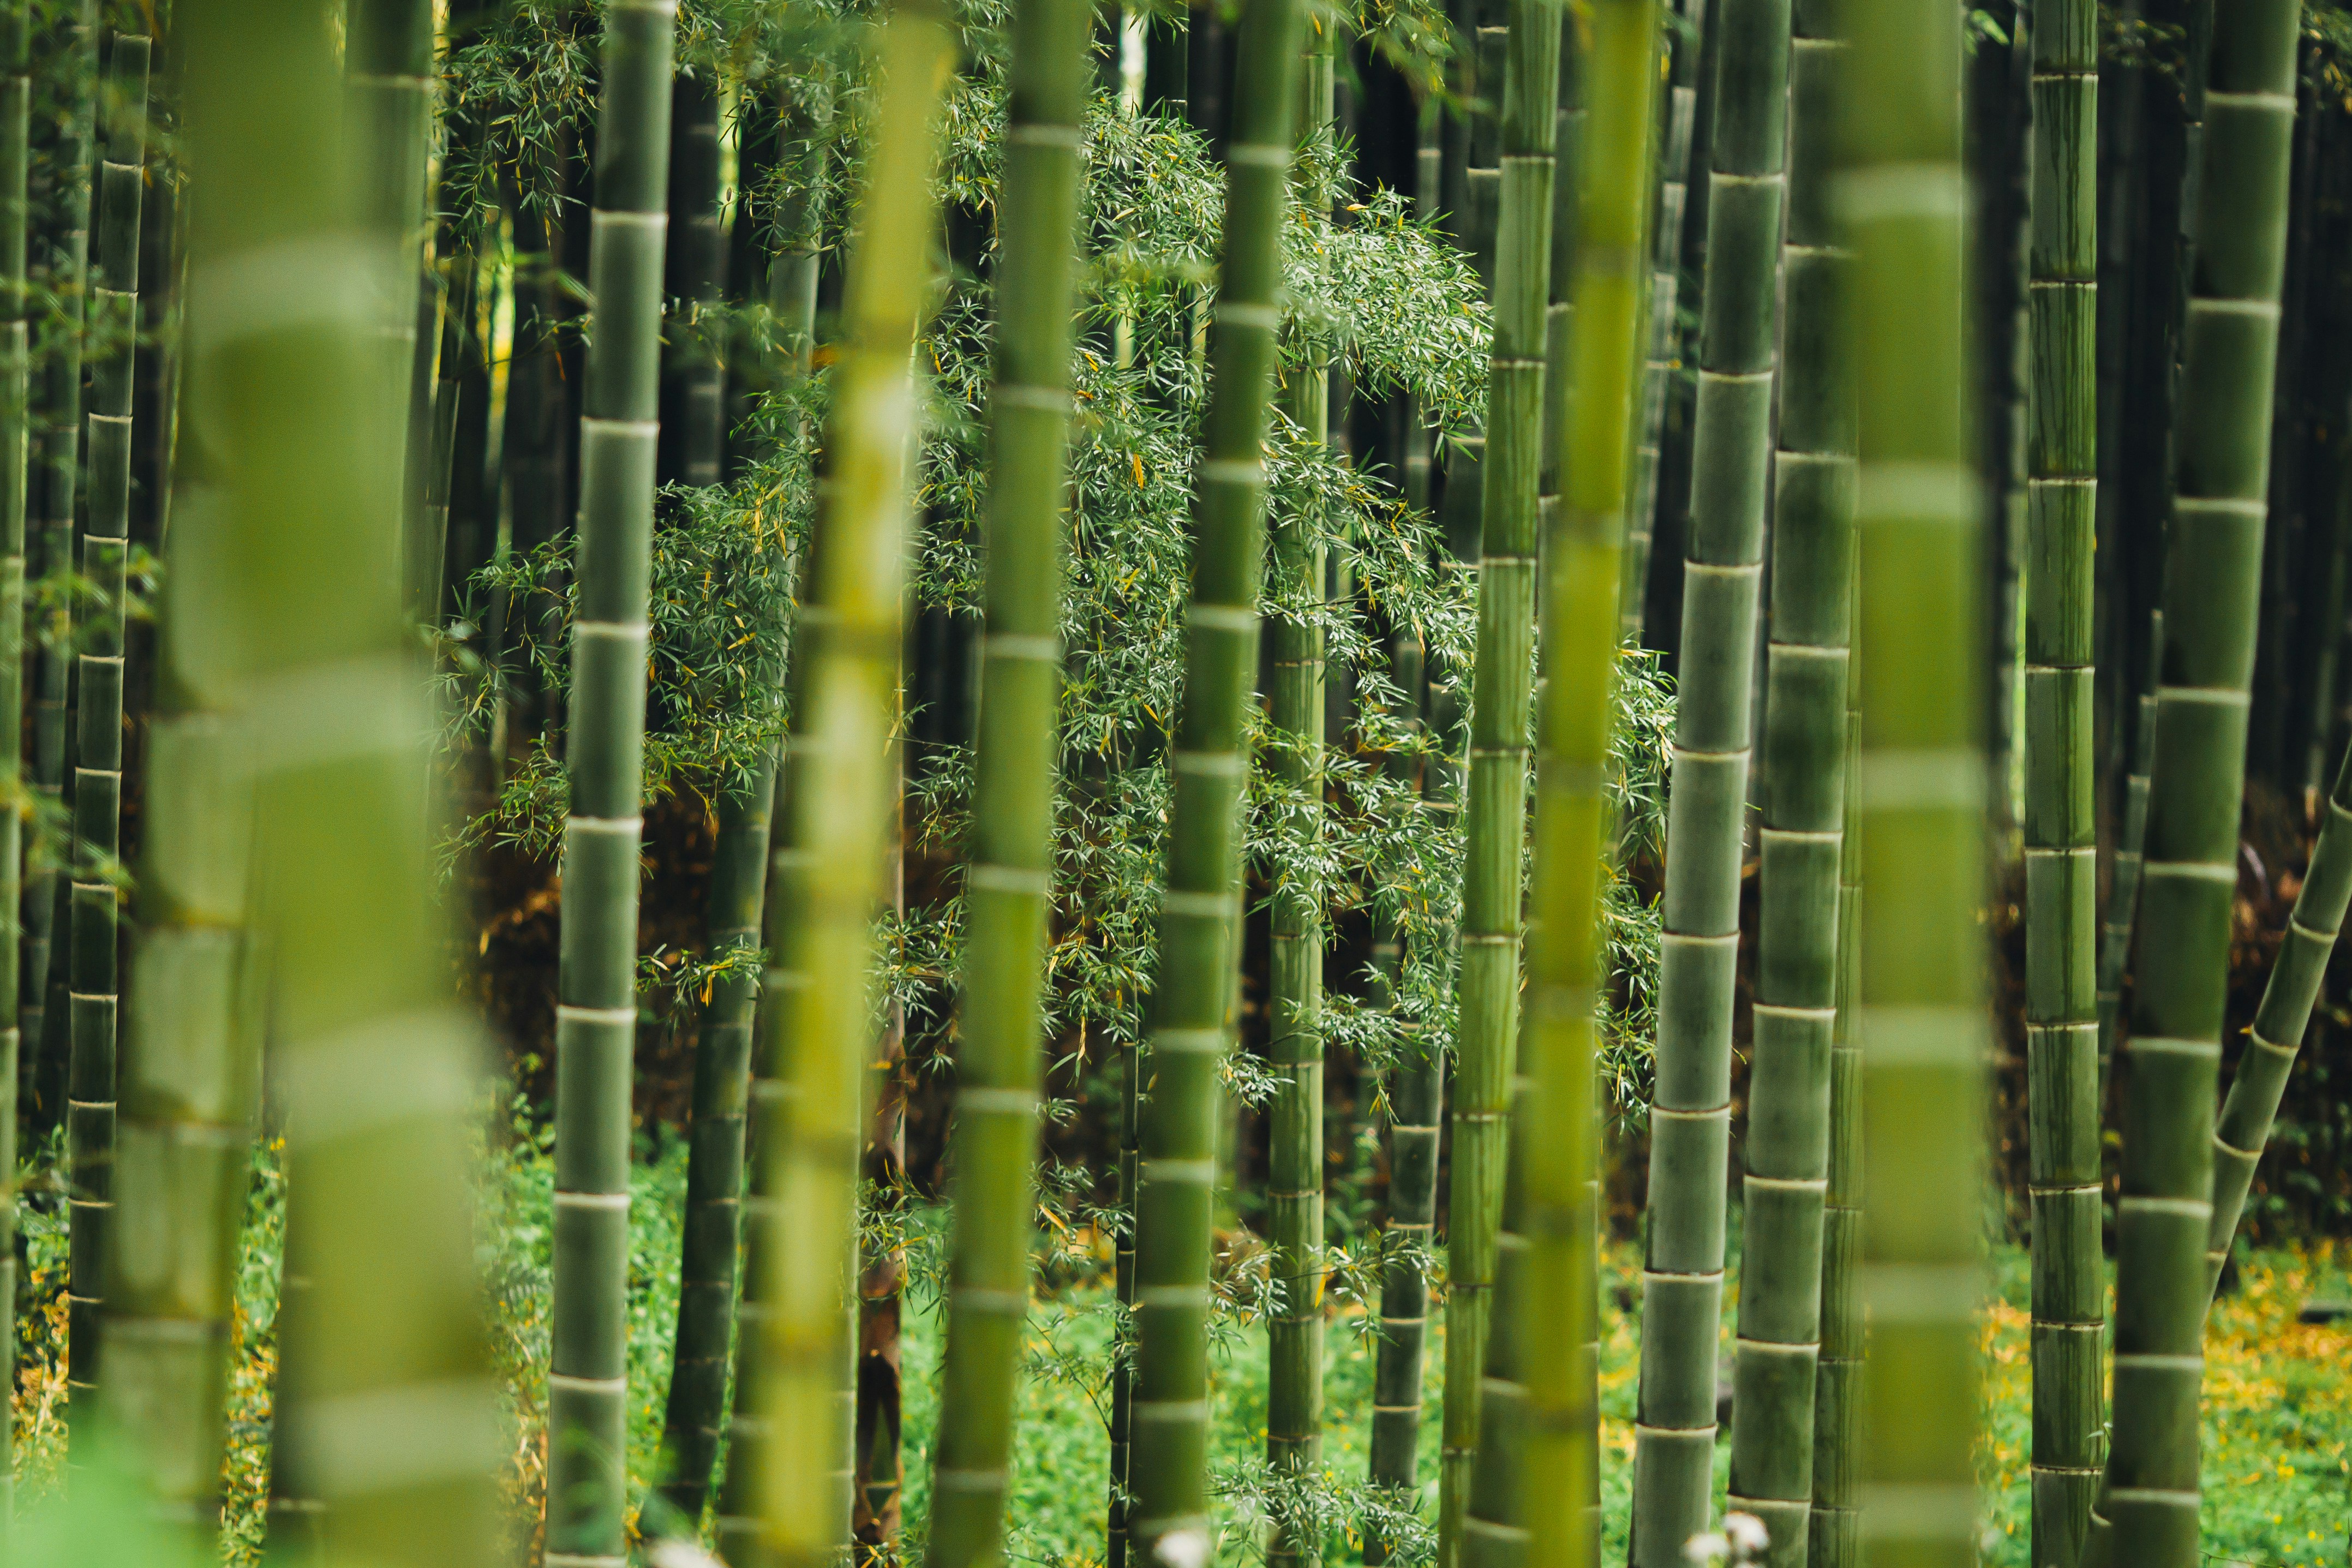  bambustrær